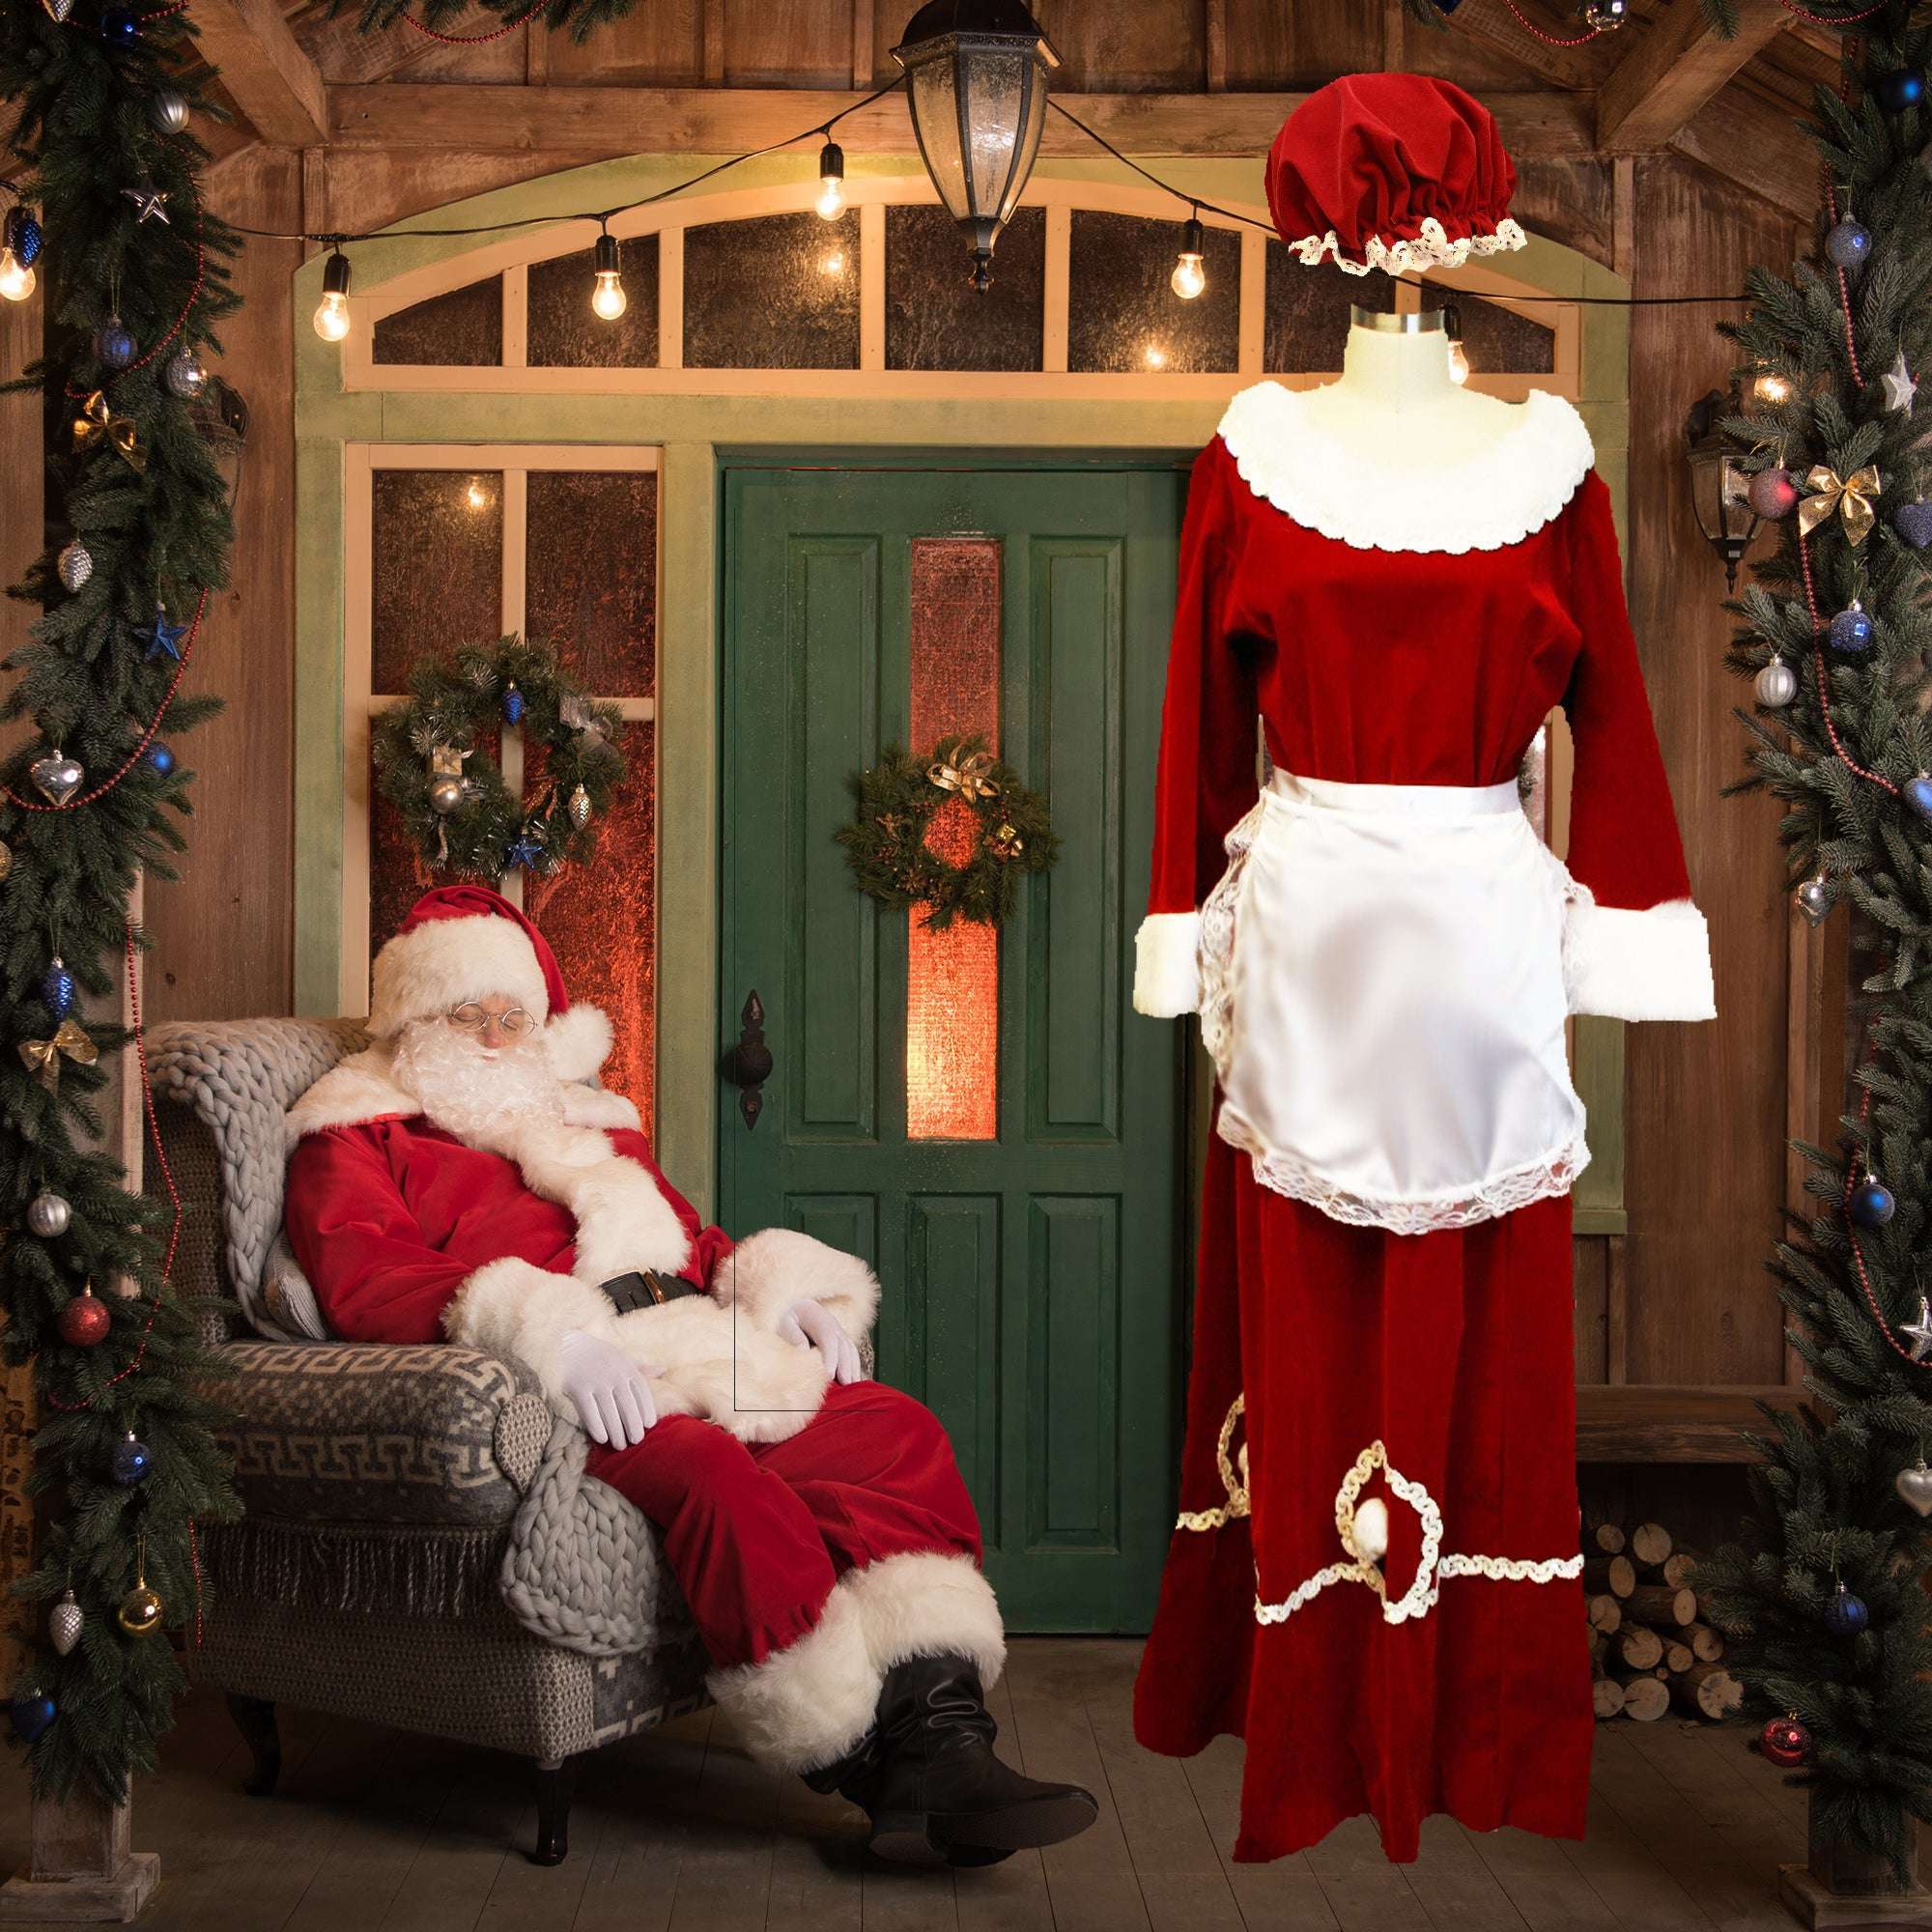 Custom Premium Red Velvet Mrs. Claus Dress W/ Sequin Trim and Apron Adult Costume